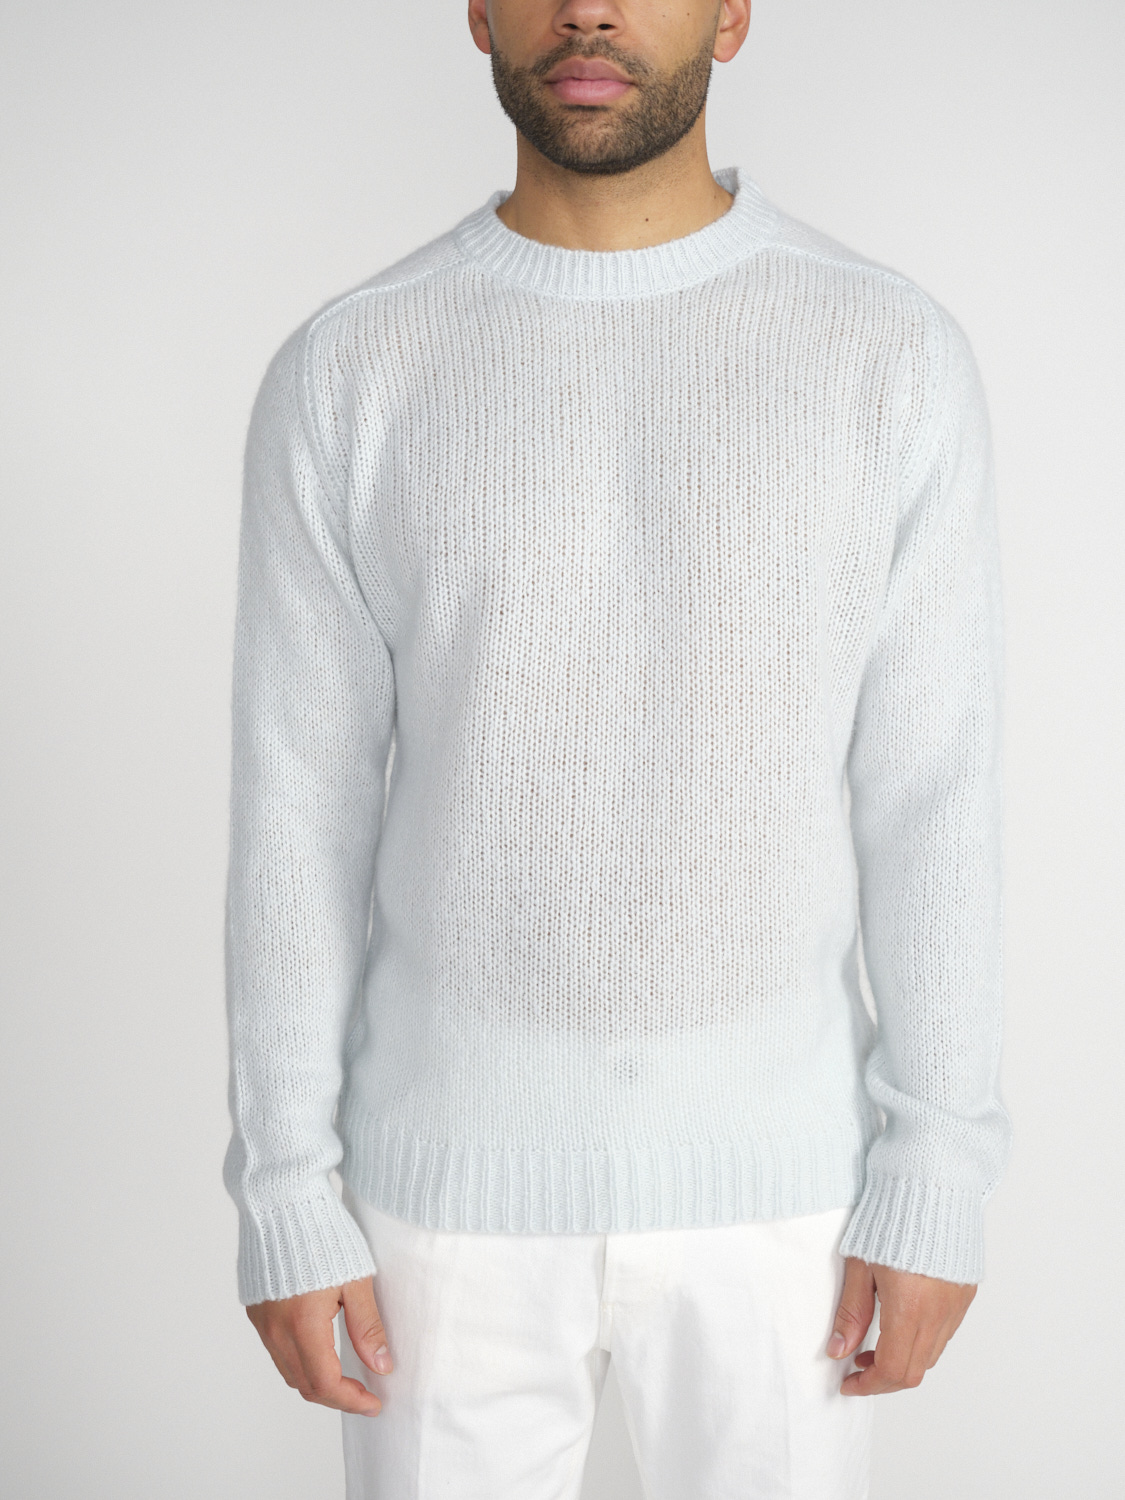 Stephan Boya Boya Leo - Lightweight knitted sweater in cashmere   mint M